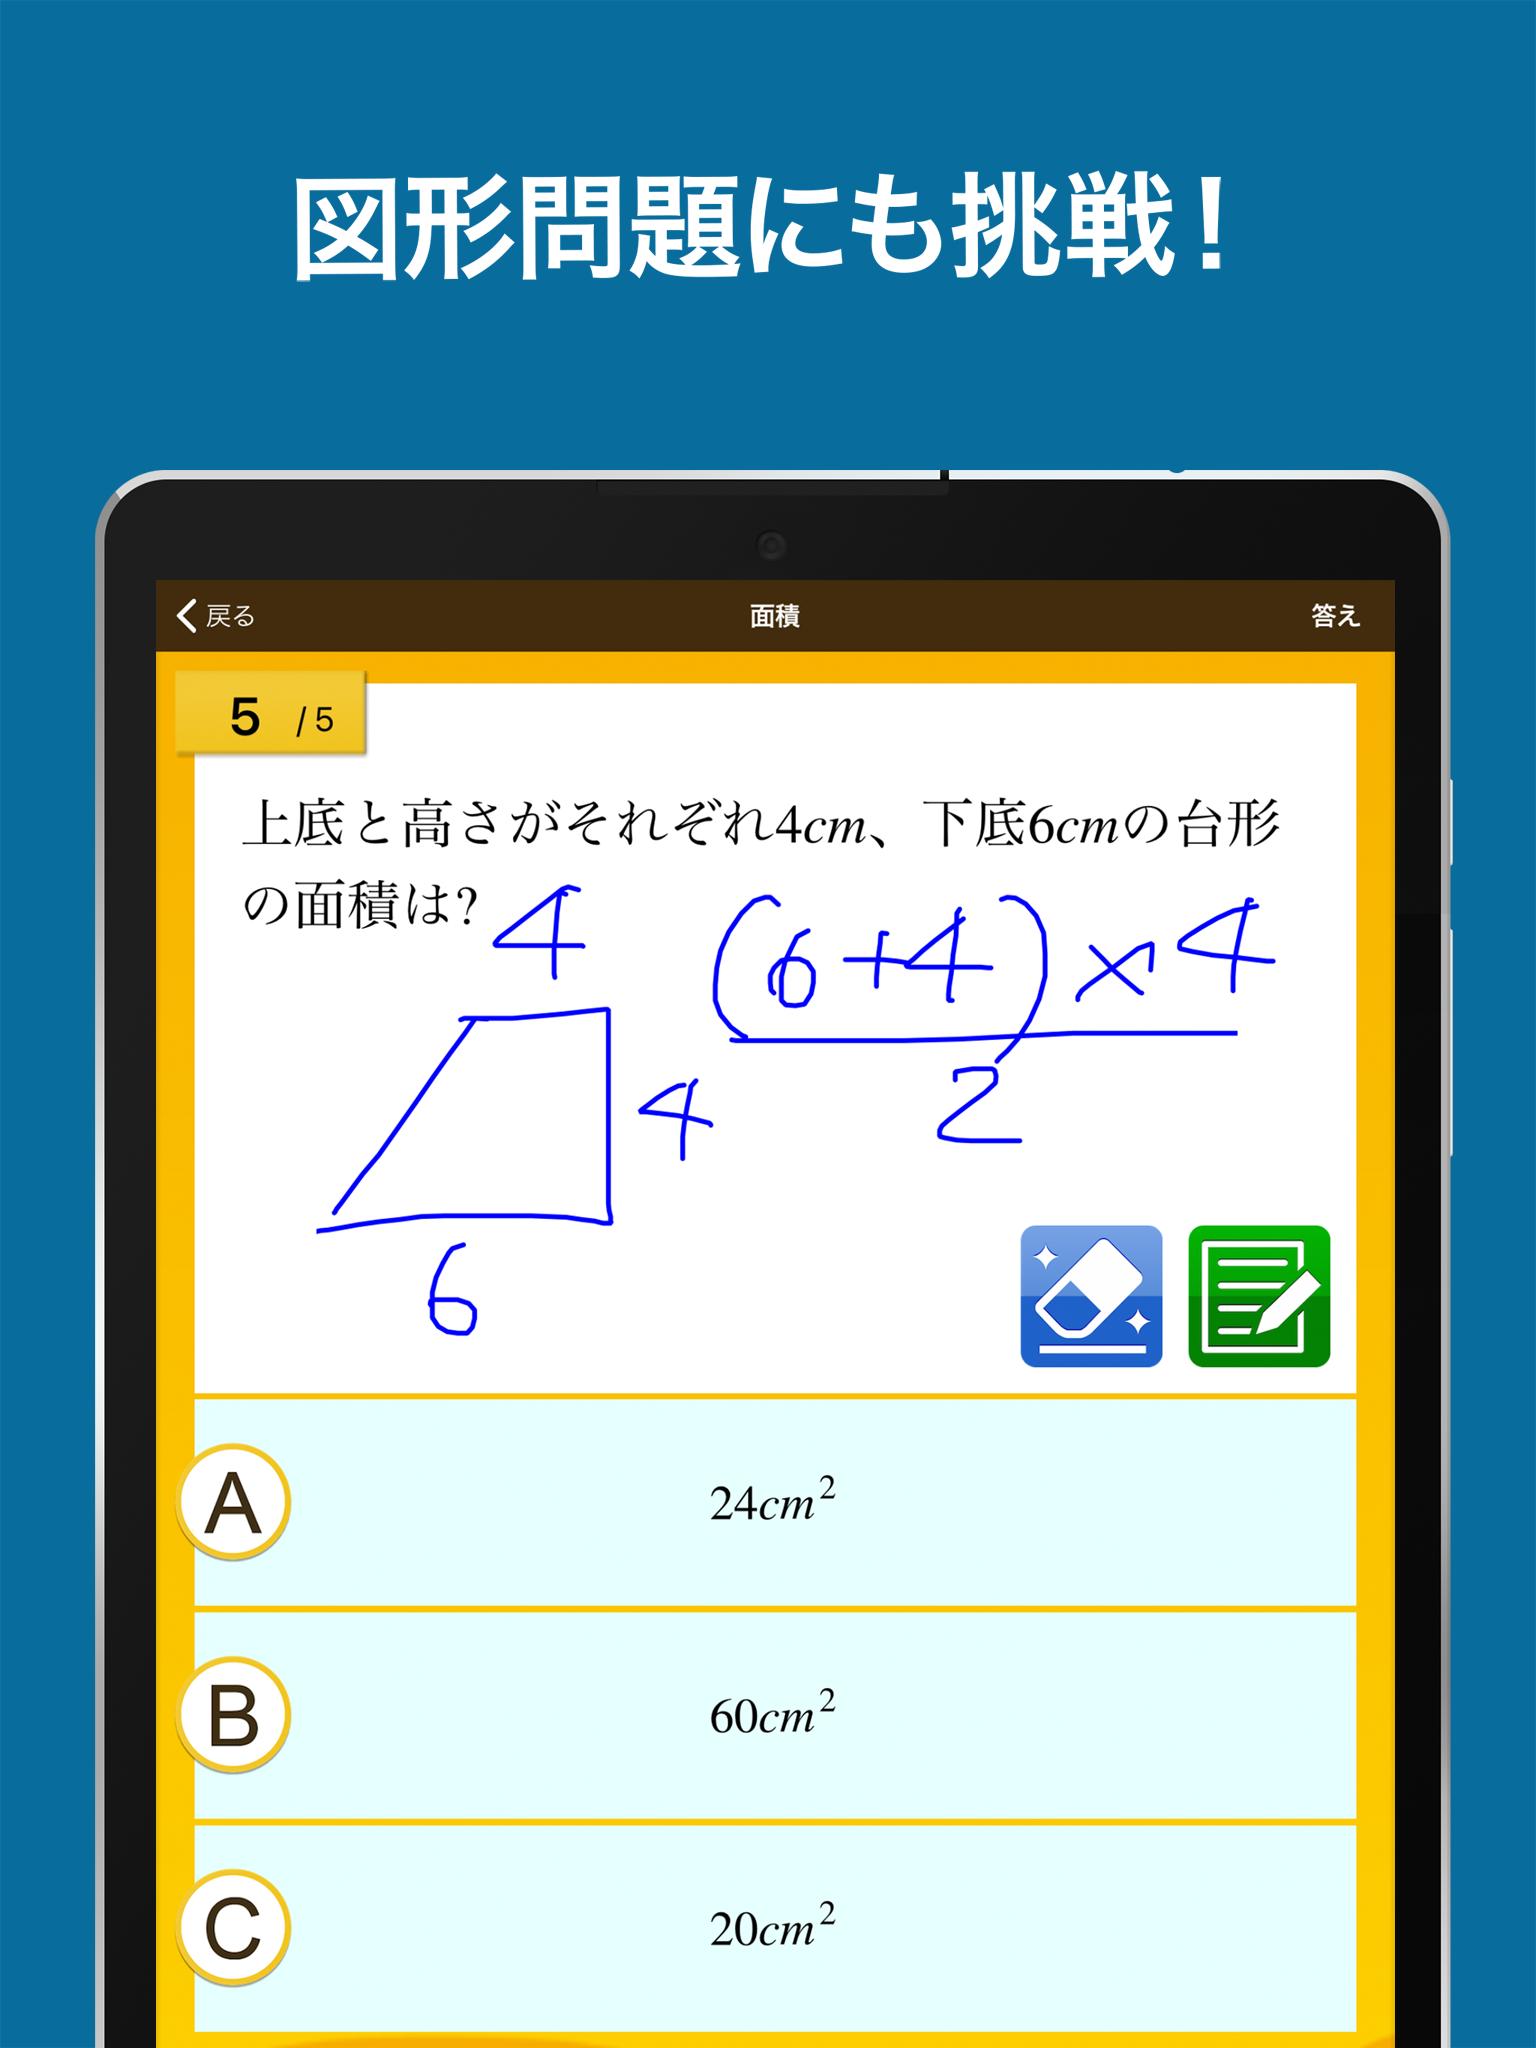 数学検定 数学計算トレーニング 無料 中学生数学勉強アプリ For Android Apk Download